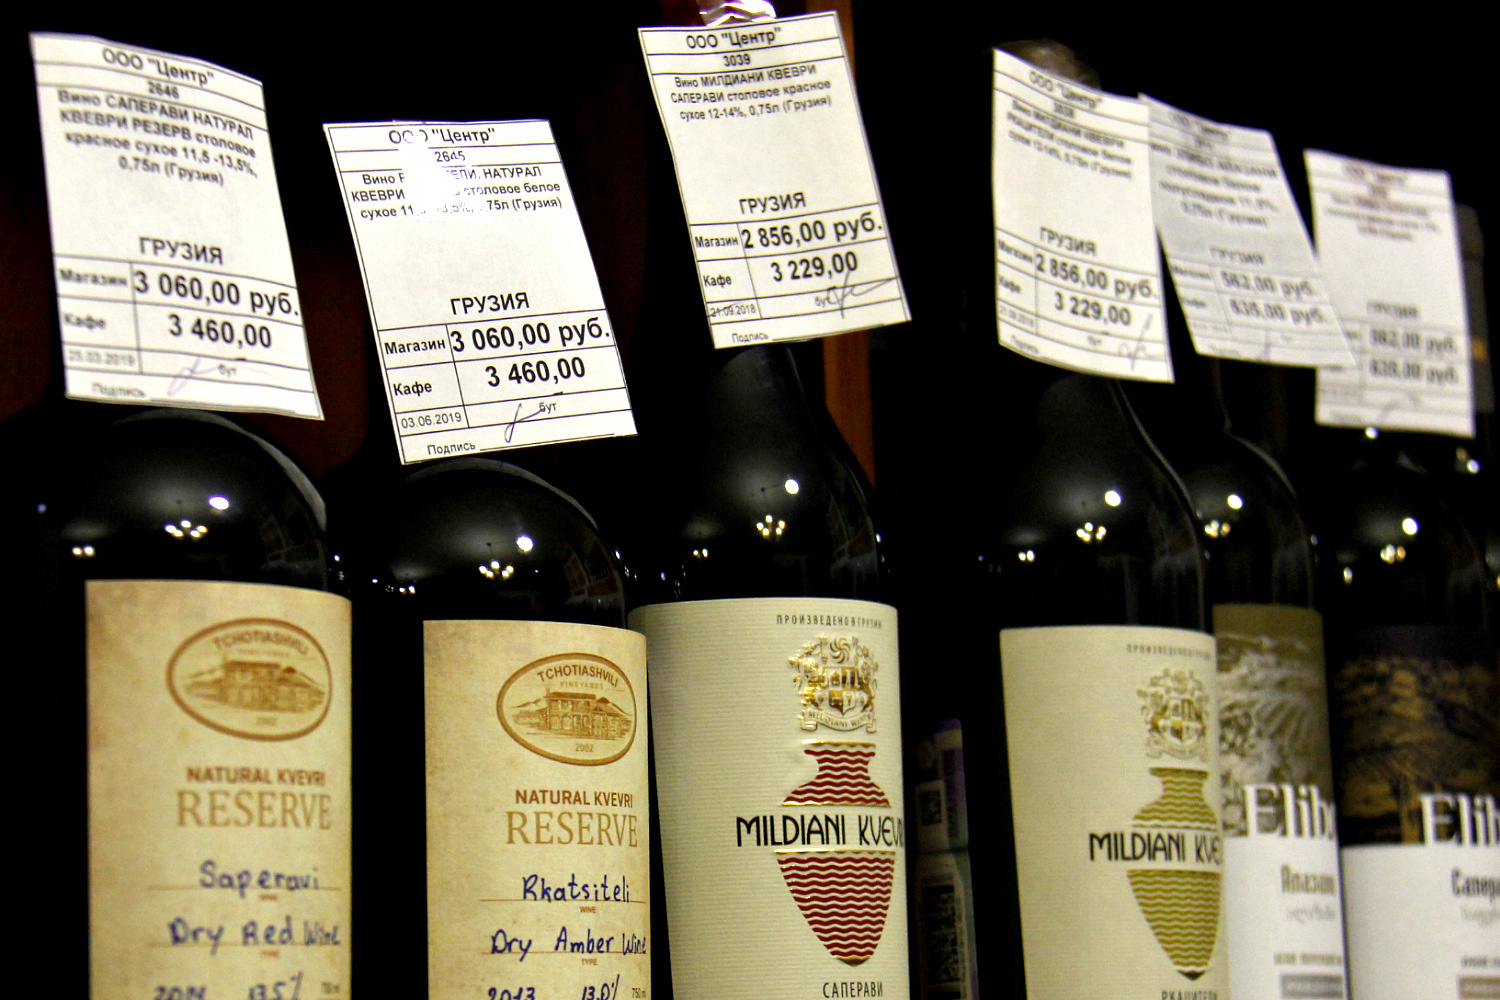 Цены на настоящее грузинское вино из квеври от винодела с именем могут превышать 3 тыс. рублей за бутылку